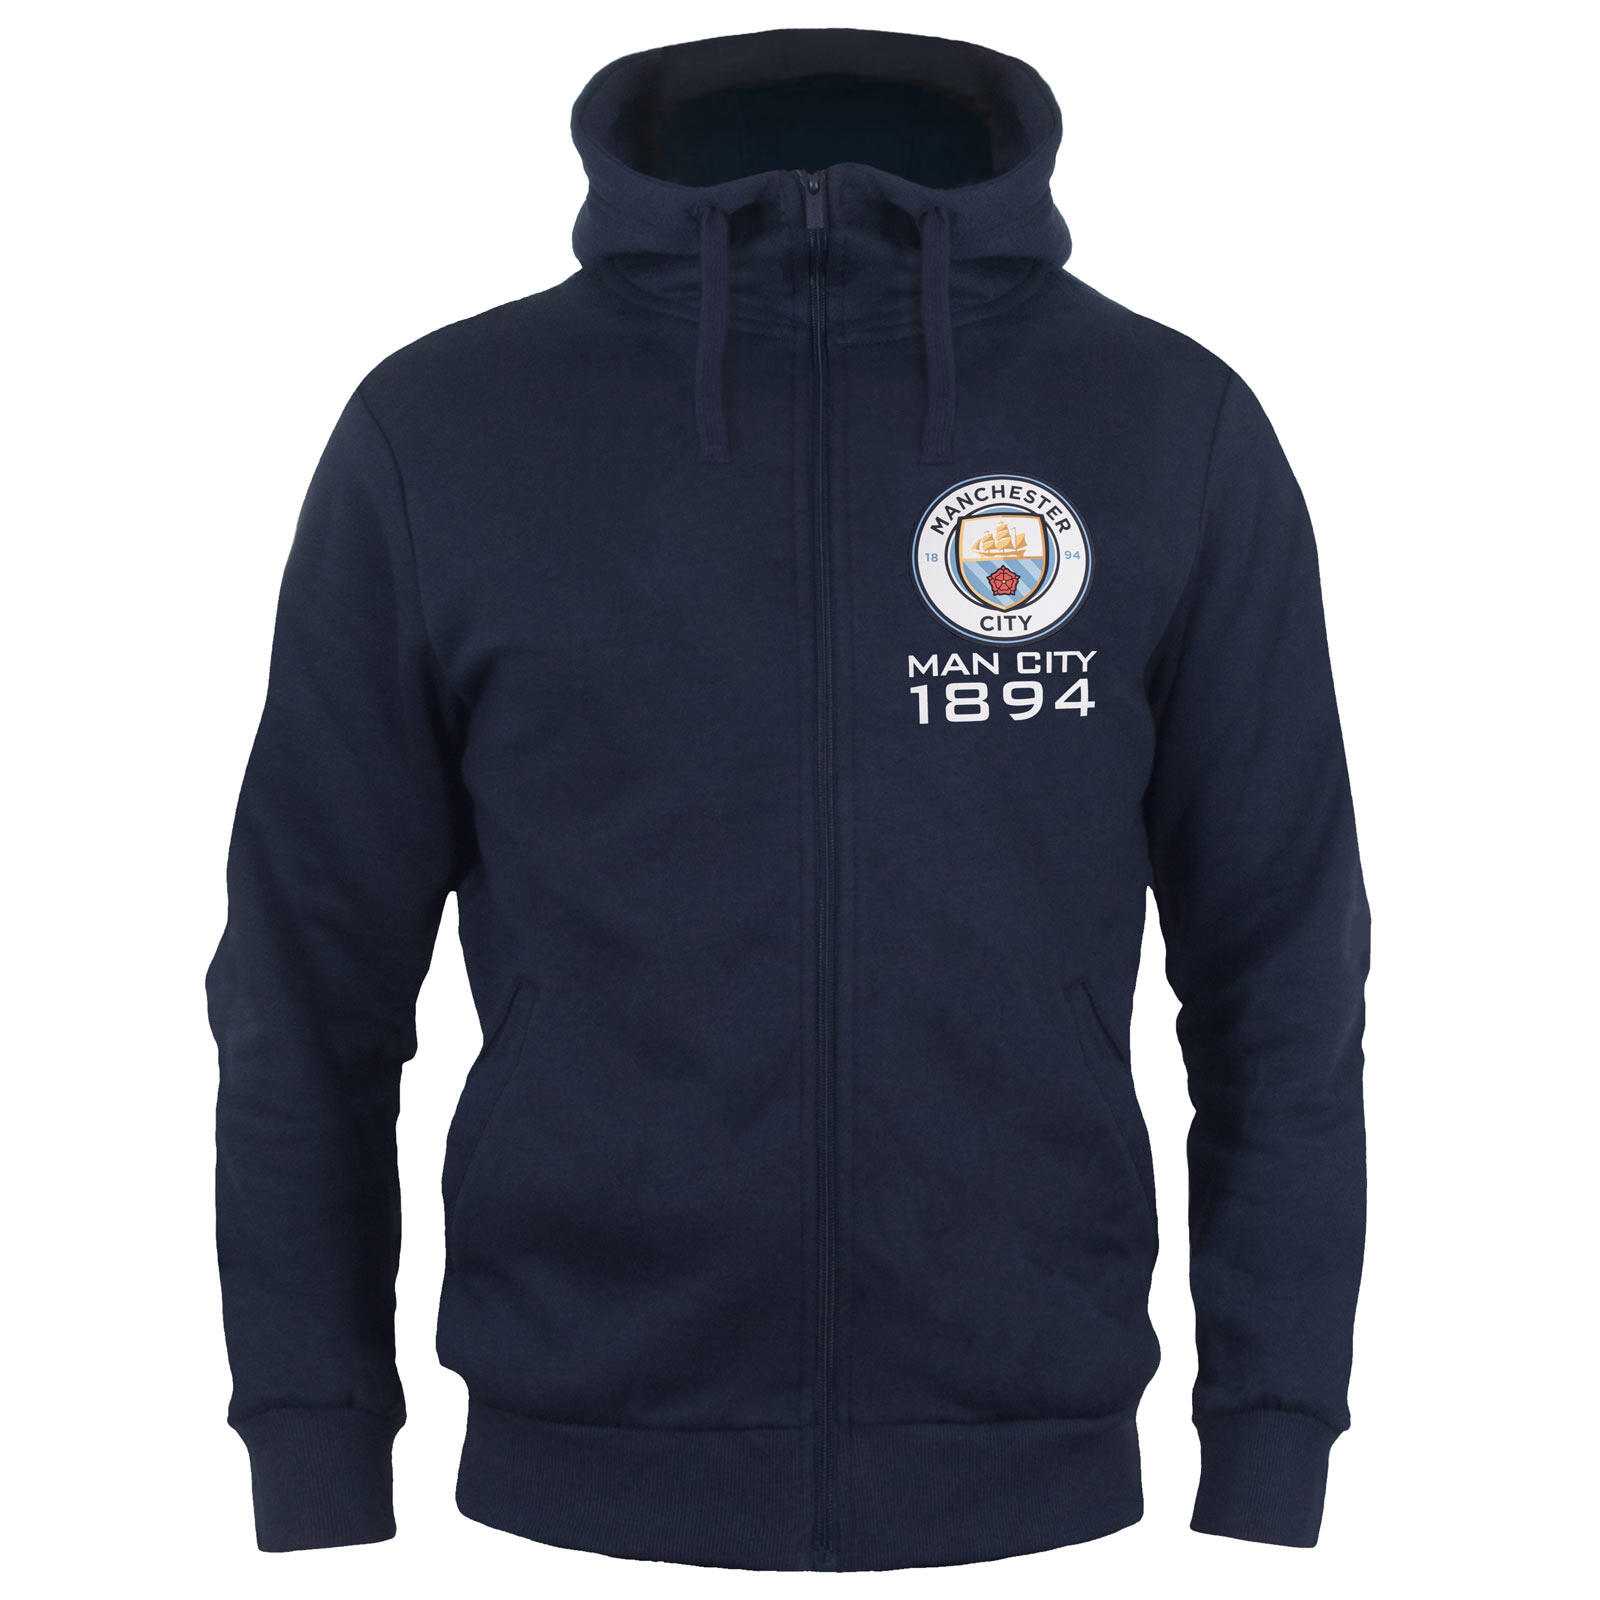 MANCHESTER CITY Manchester City Mens Hoody Zip Fleece OFFICIAL Football Gift